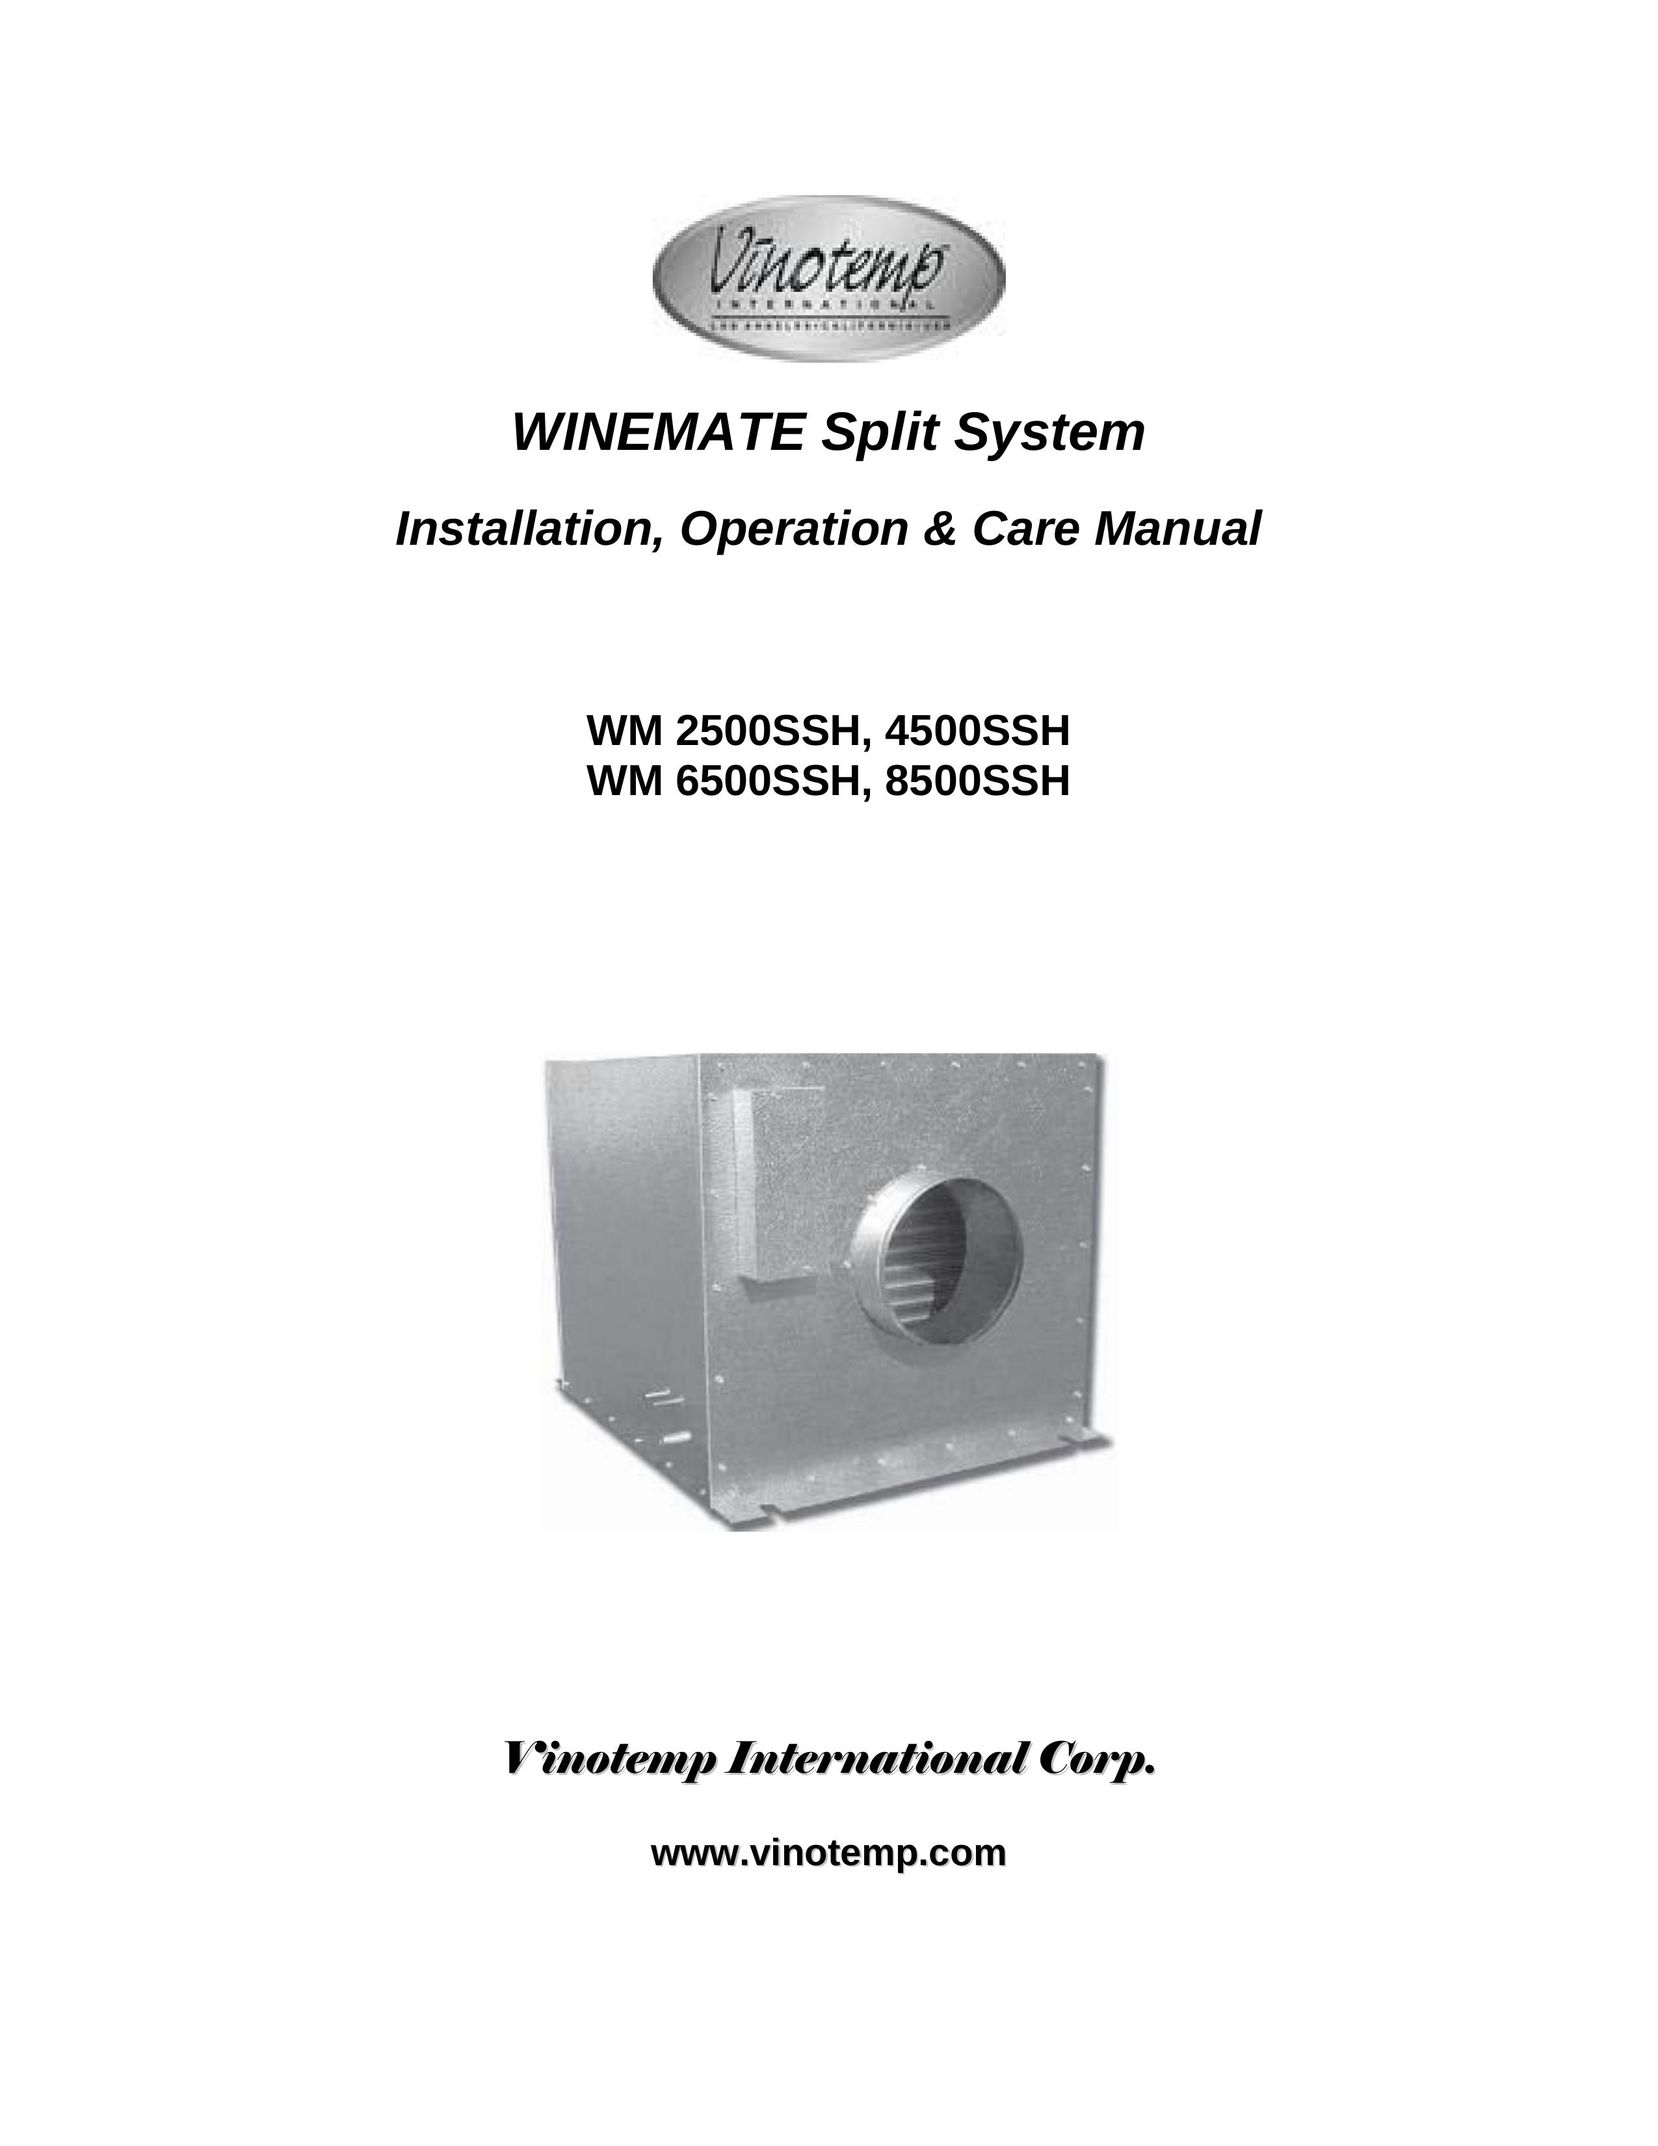 Vinotemp 8500SSH Air Conditioner User Manual